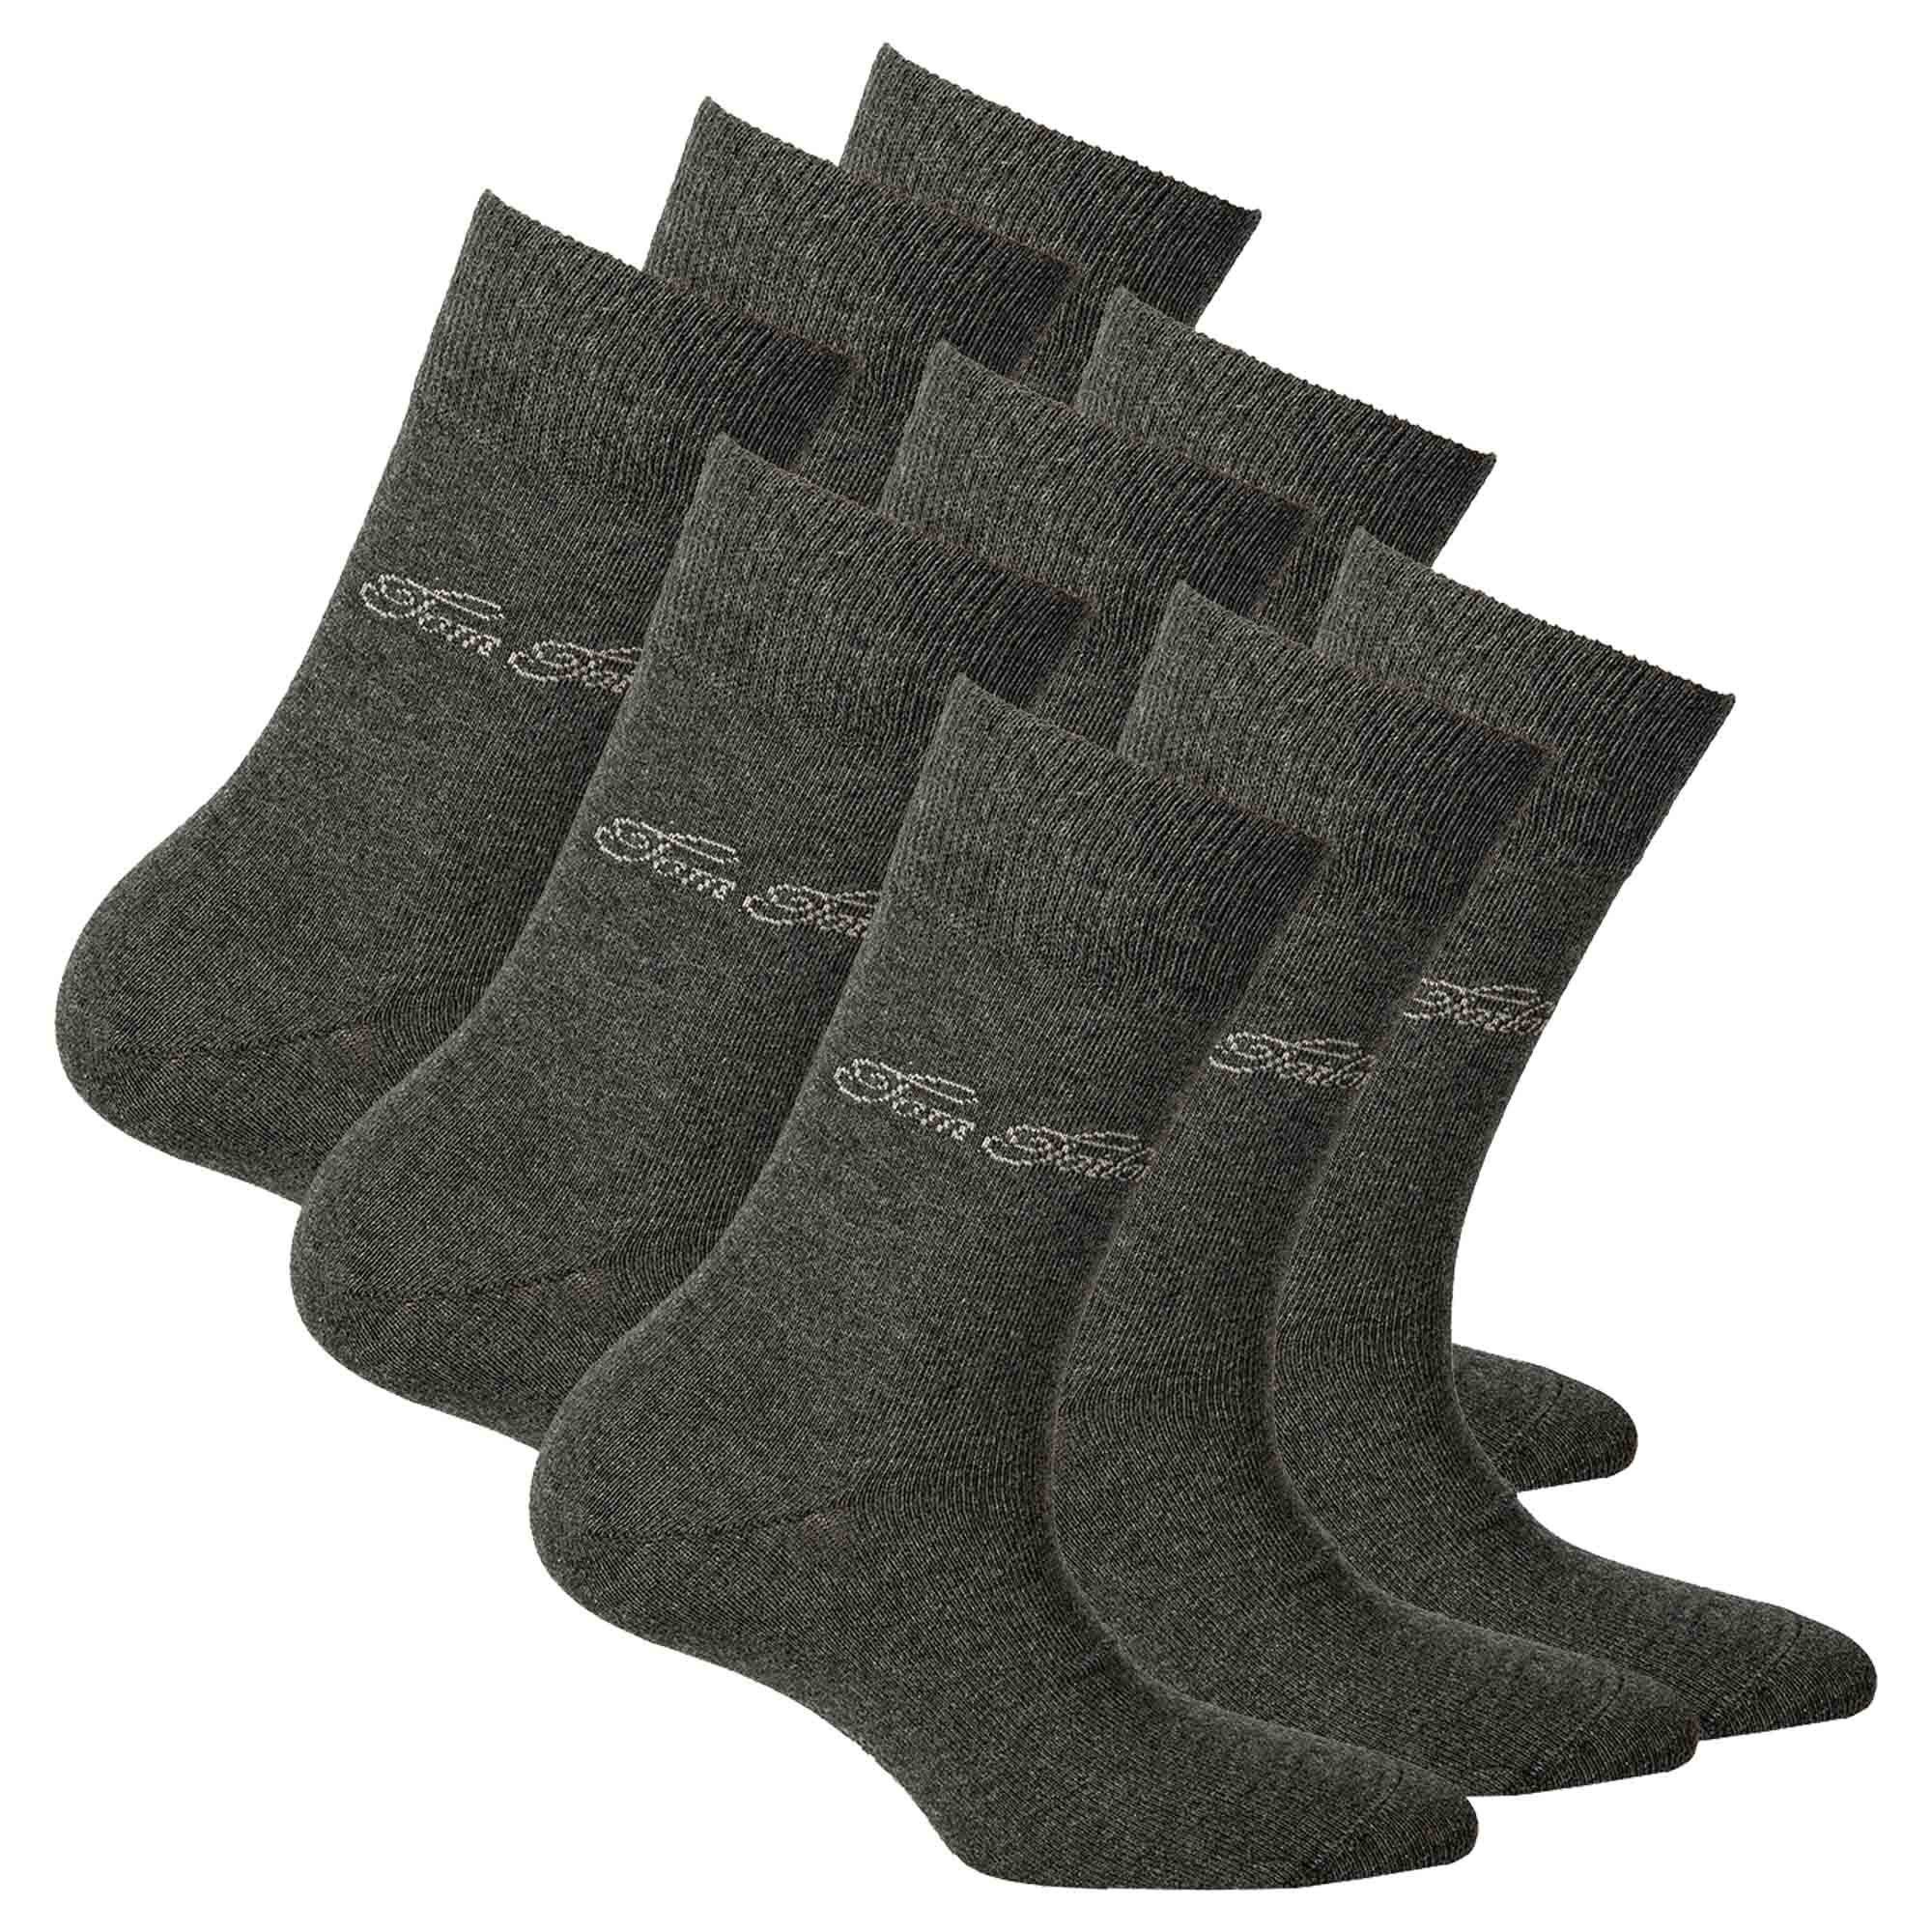 TOM TAILOR Kurzsocken Grau Herren - einfarbig 9er Socken Pack Basic